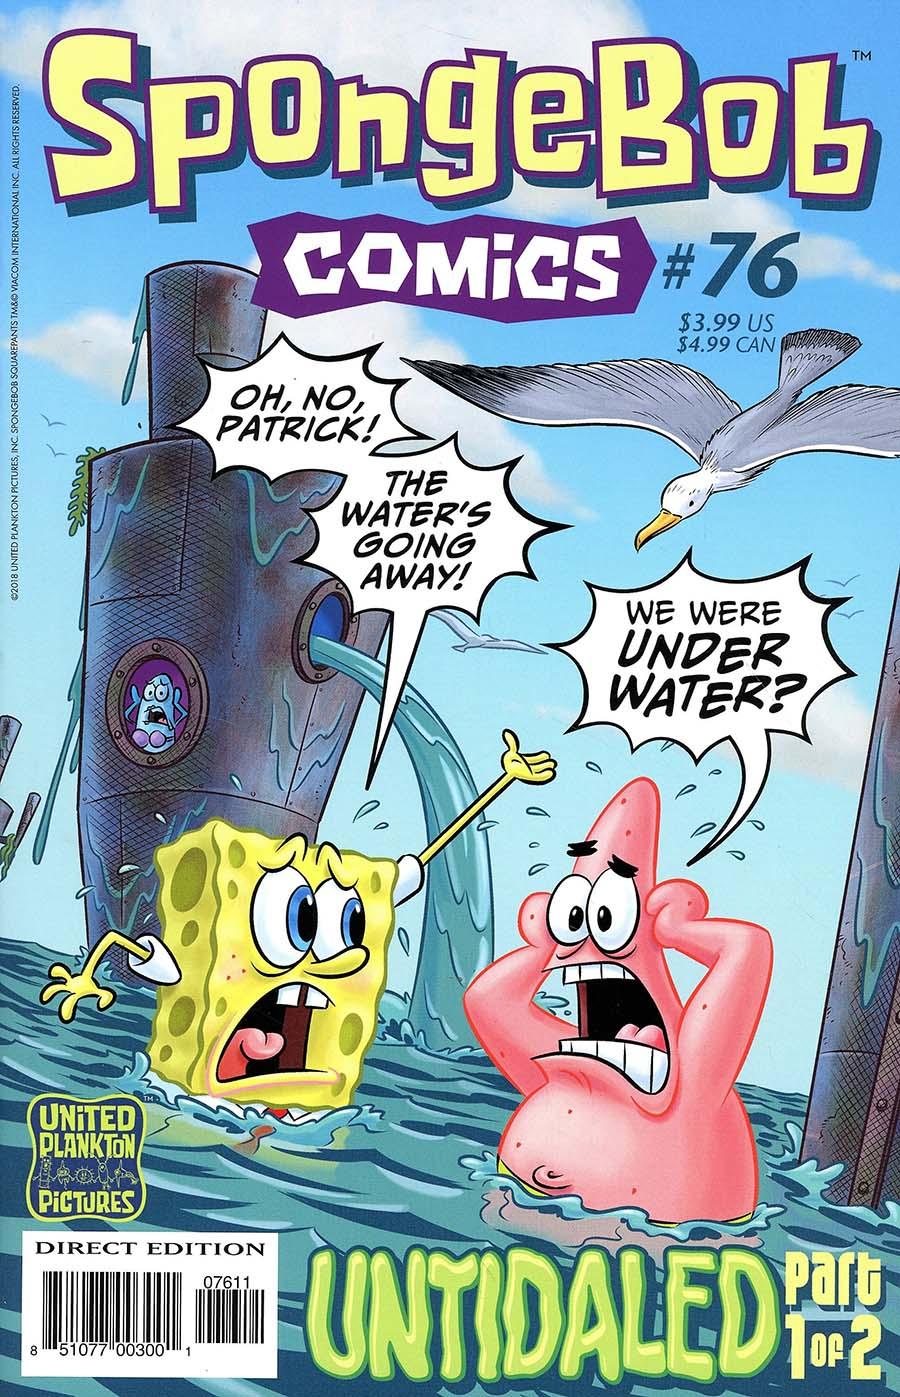 SpongeBob Comics Vol. 1 #76